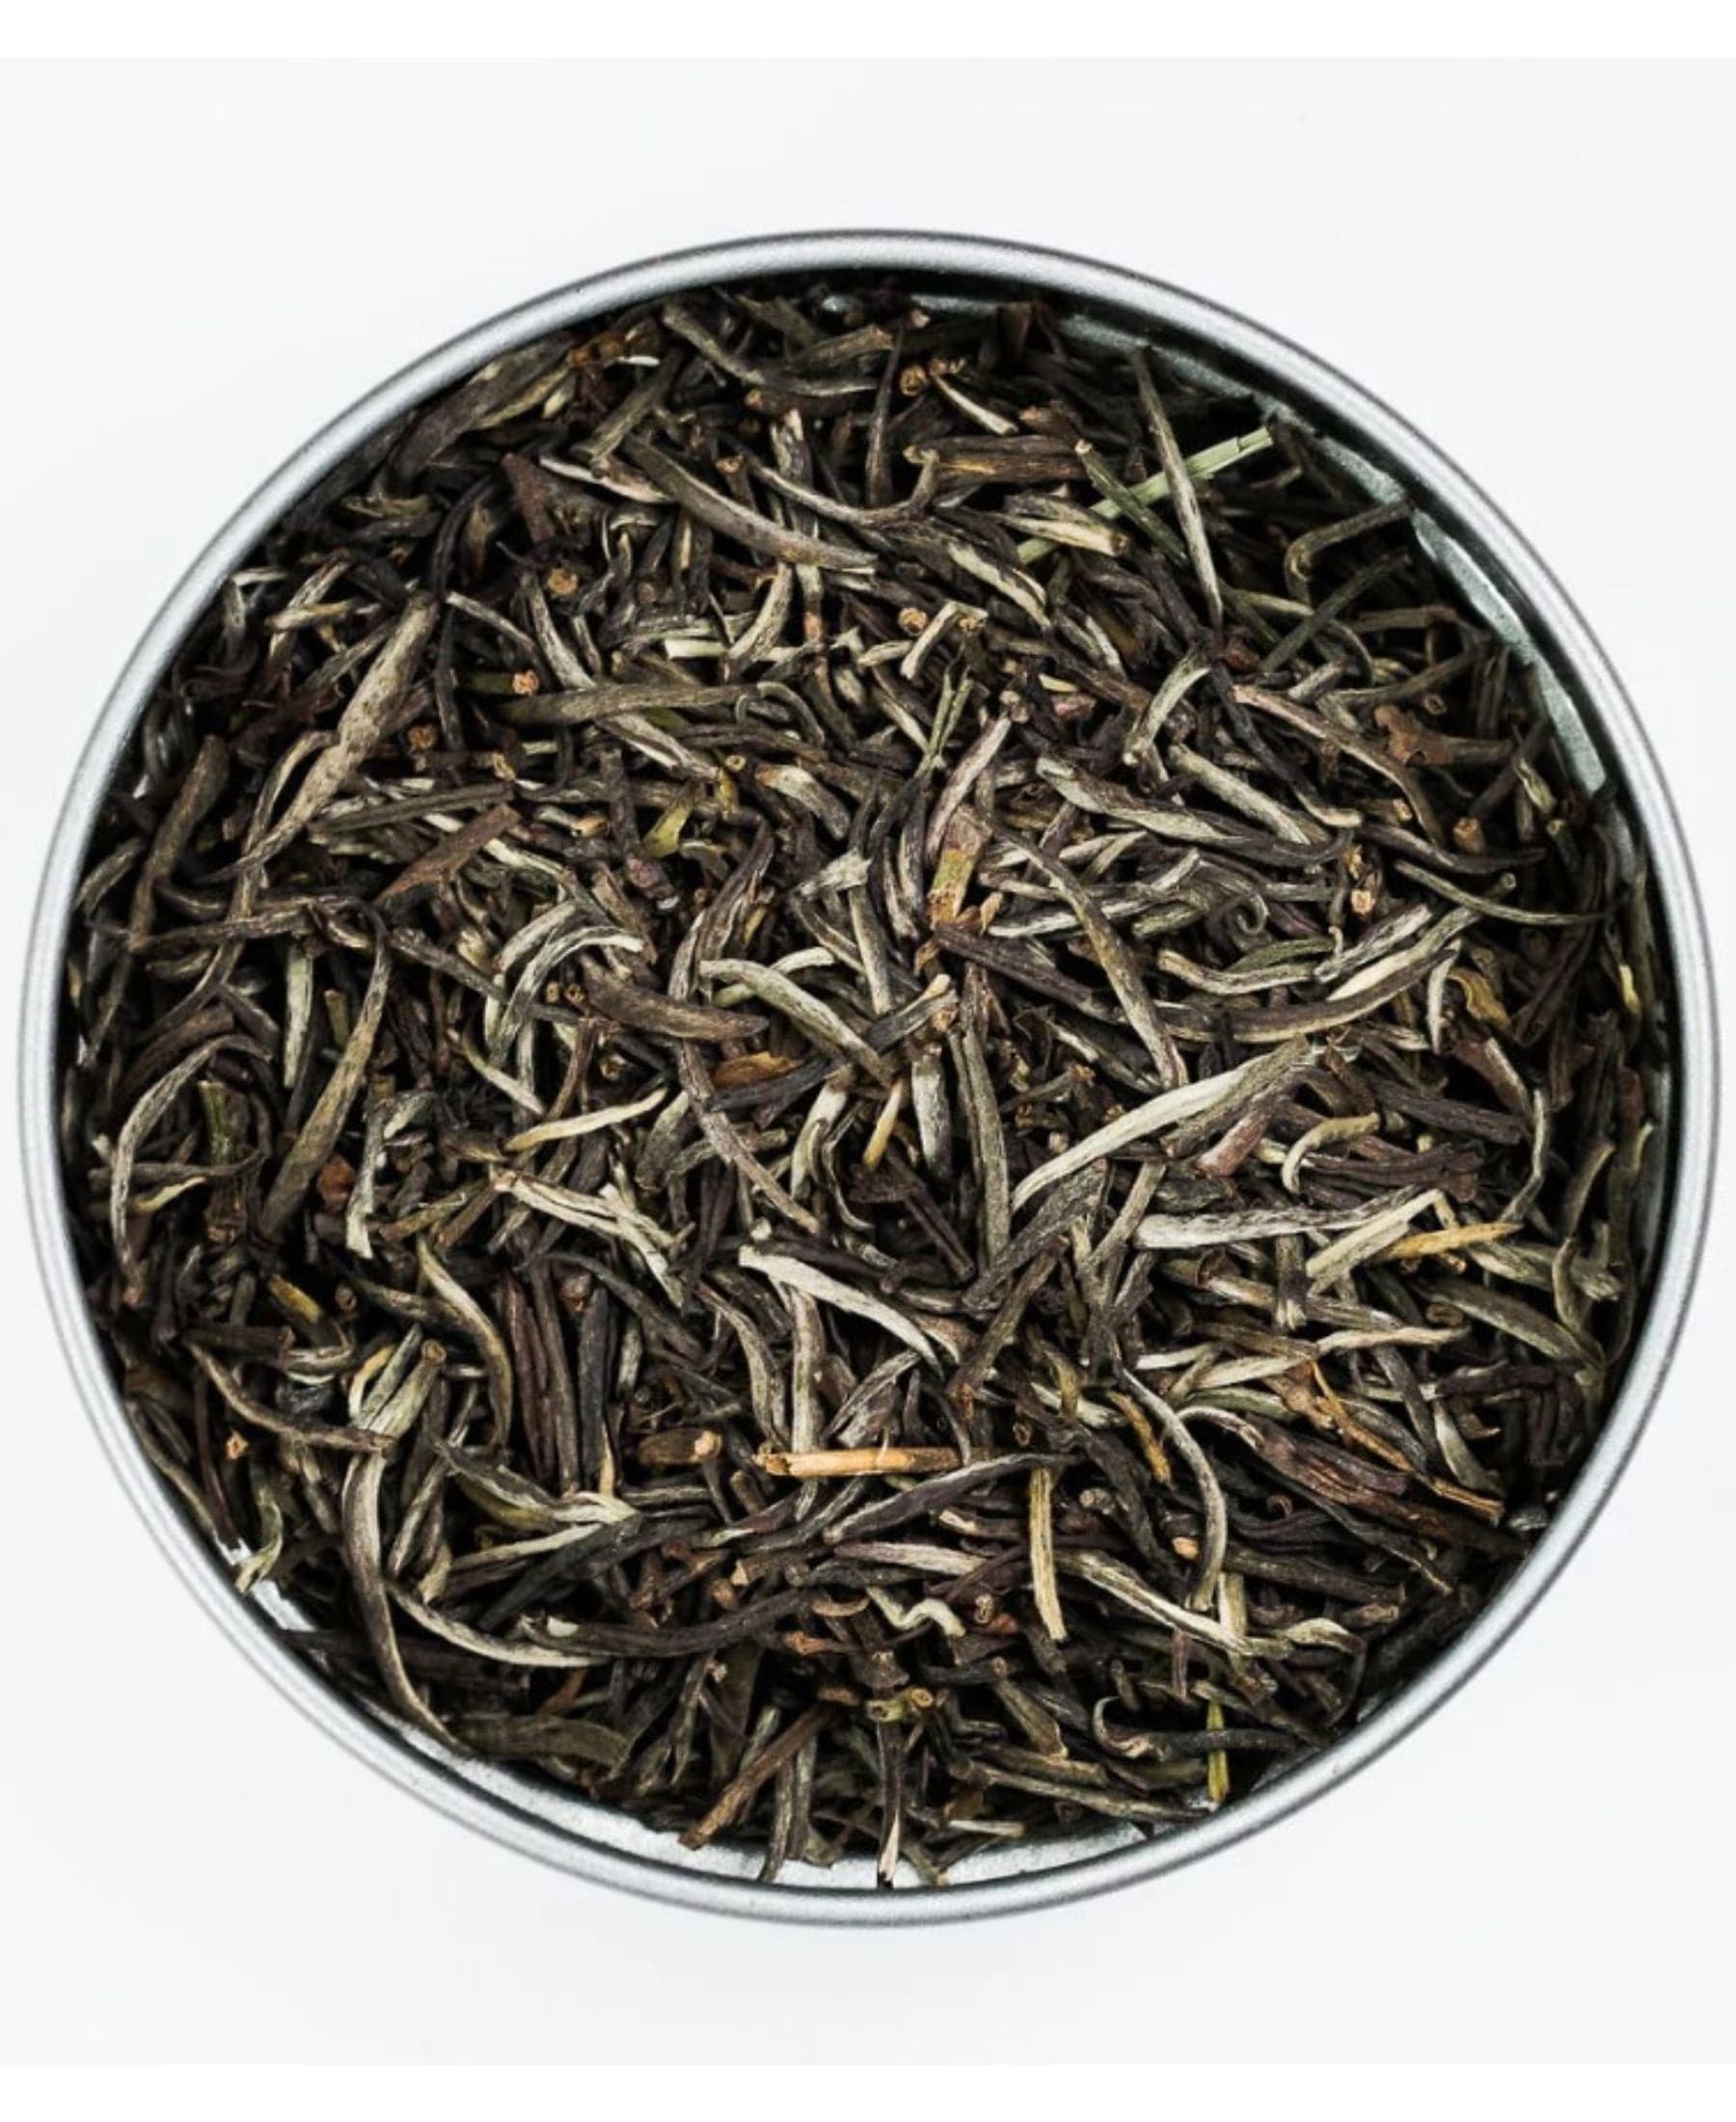 Sarilla White Tea: Tins and Bulk